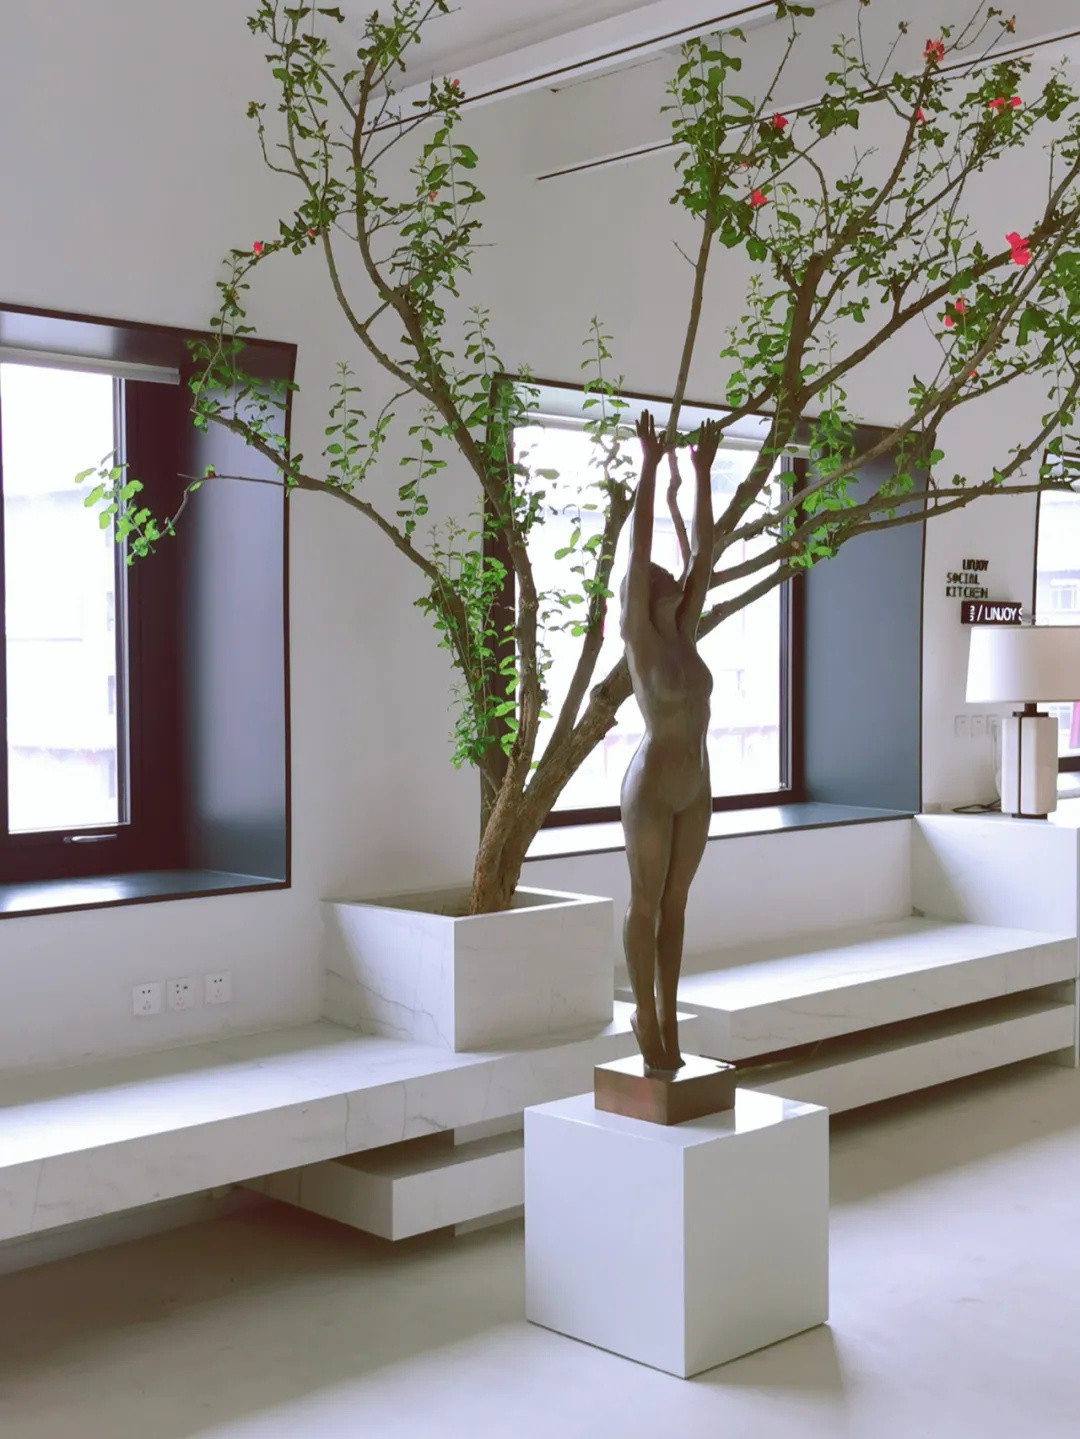 麟角设计中心 X YUAN LIVING携手共献：城市会客厅第二季「设计、艺术、生活融合之美」